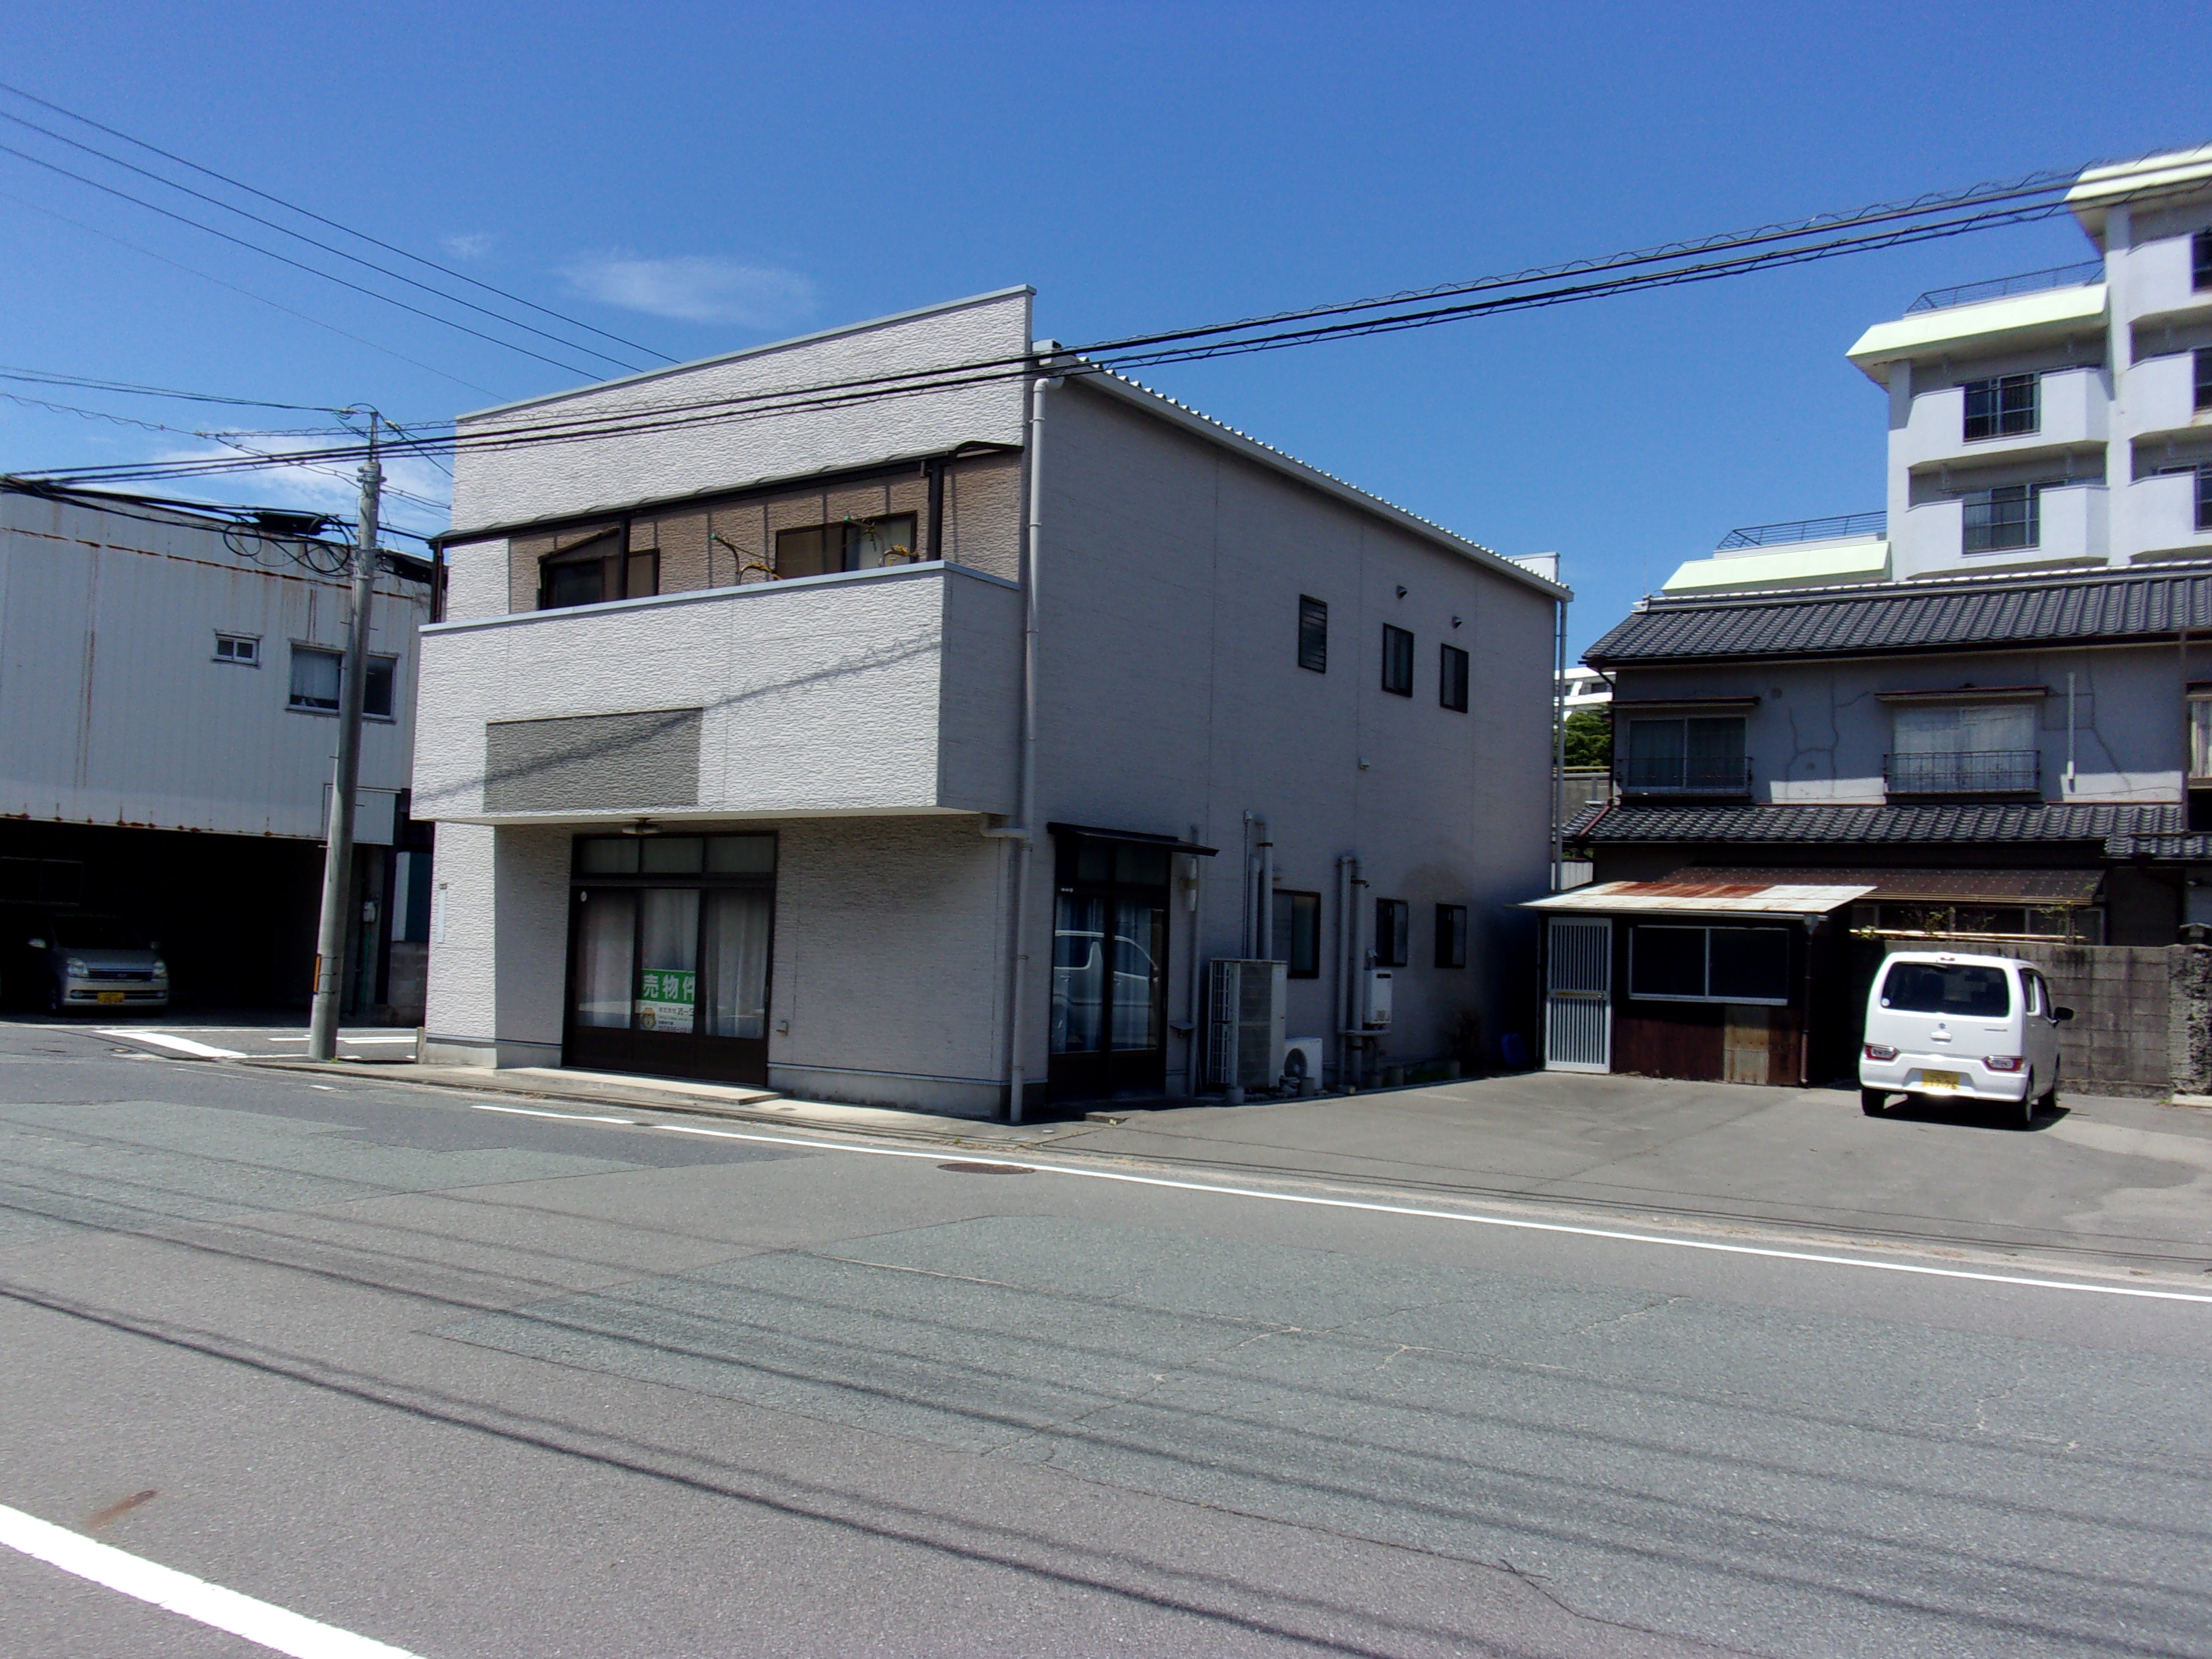 東新川町 店舗付き住居の外観